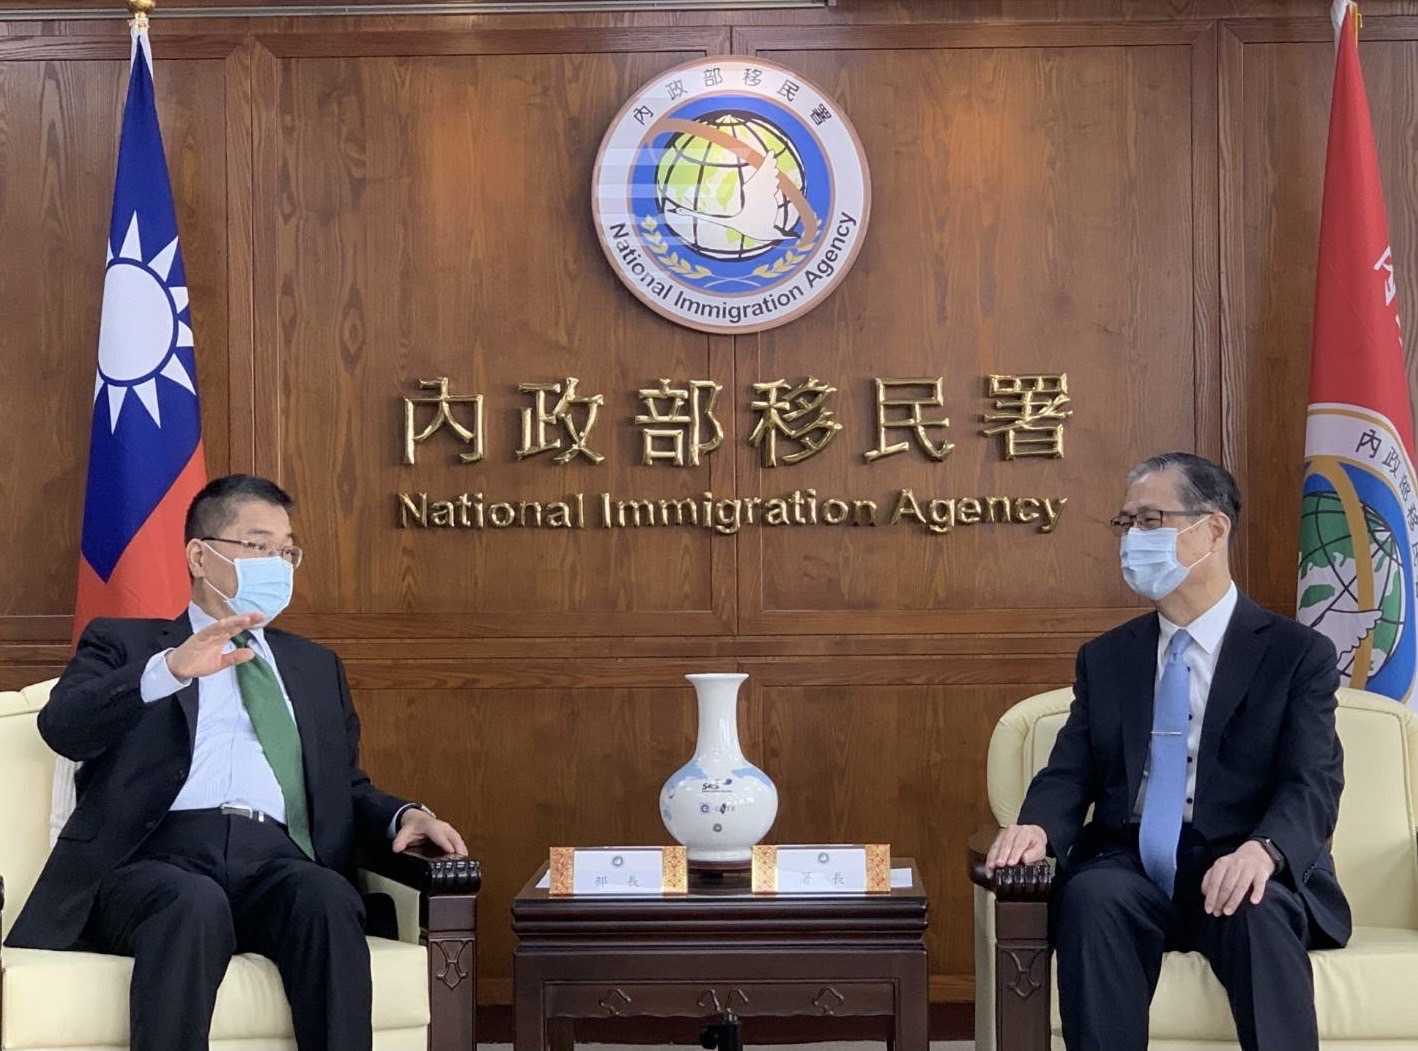 Menteri Dalam Negeri Xu Guo-yong (kiri) yang sedang berdiskusi dengan Ketua Agensi Imigrasi Nasional Zhong Jing-hun (kanan). Sumber: Agensi Imigrasi Nasional 